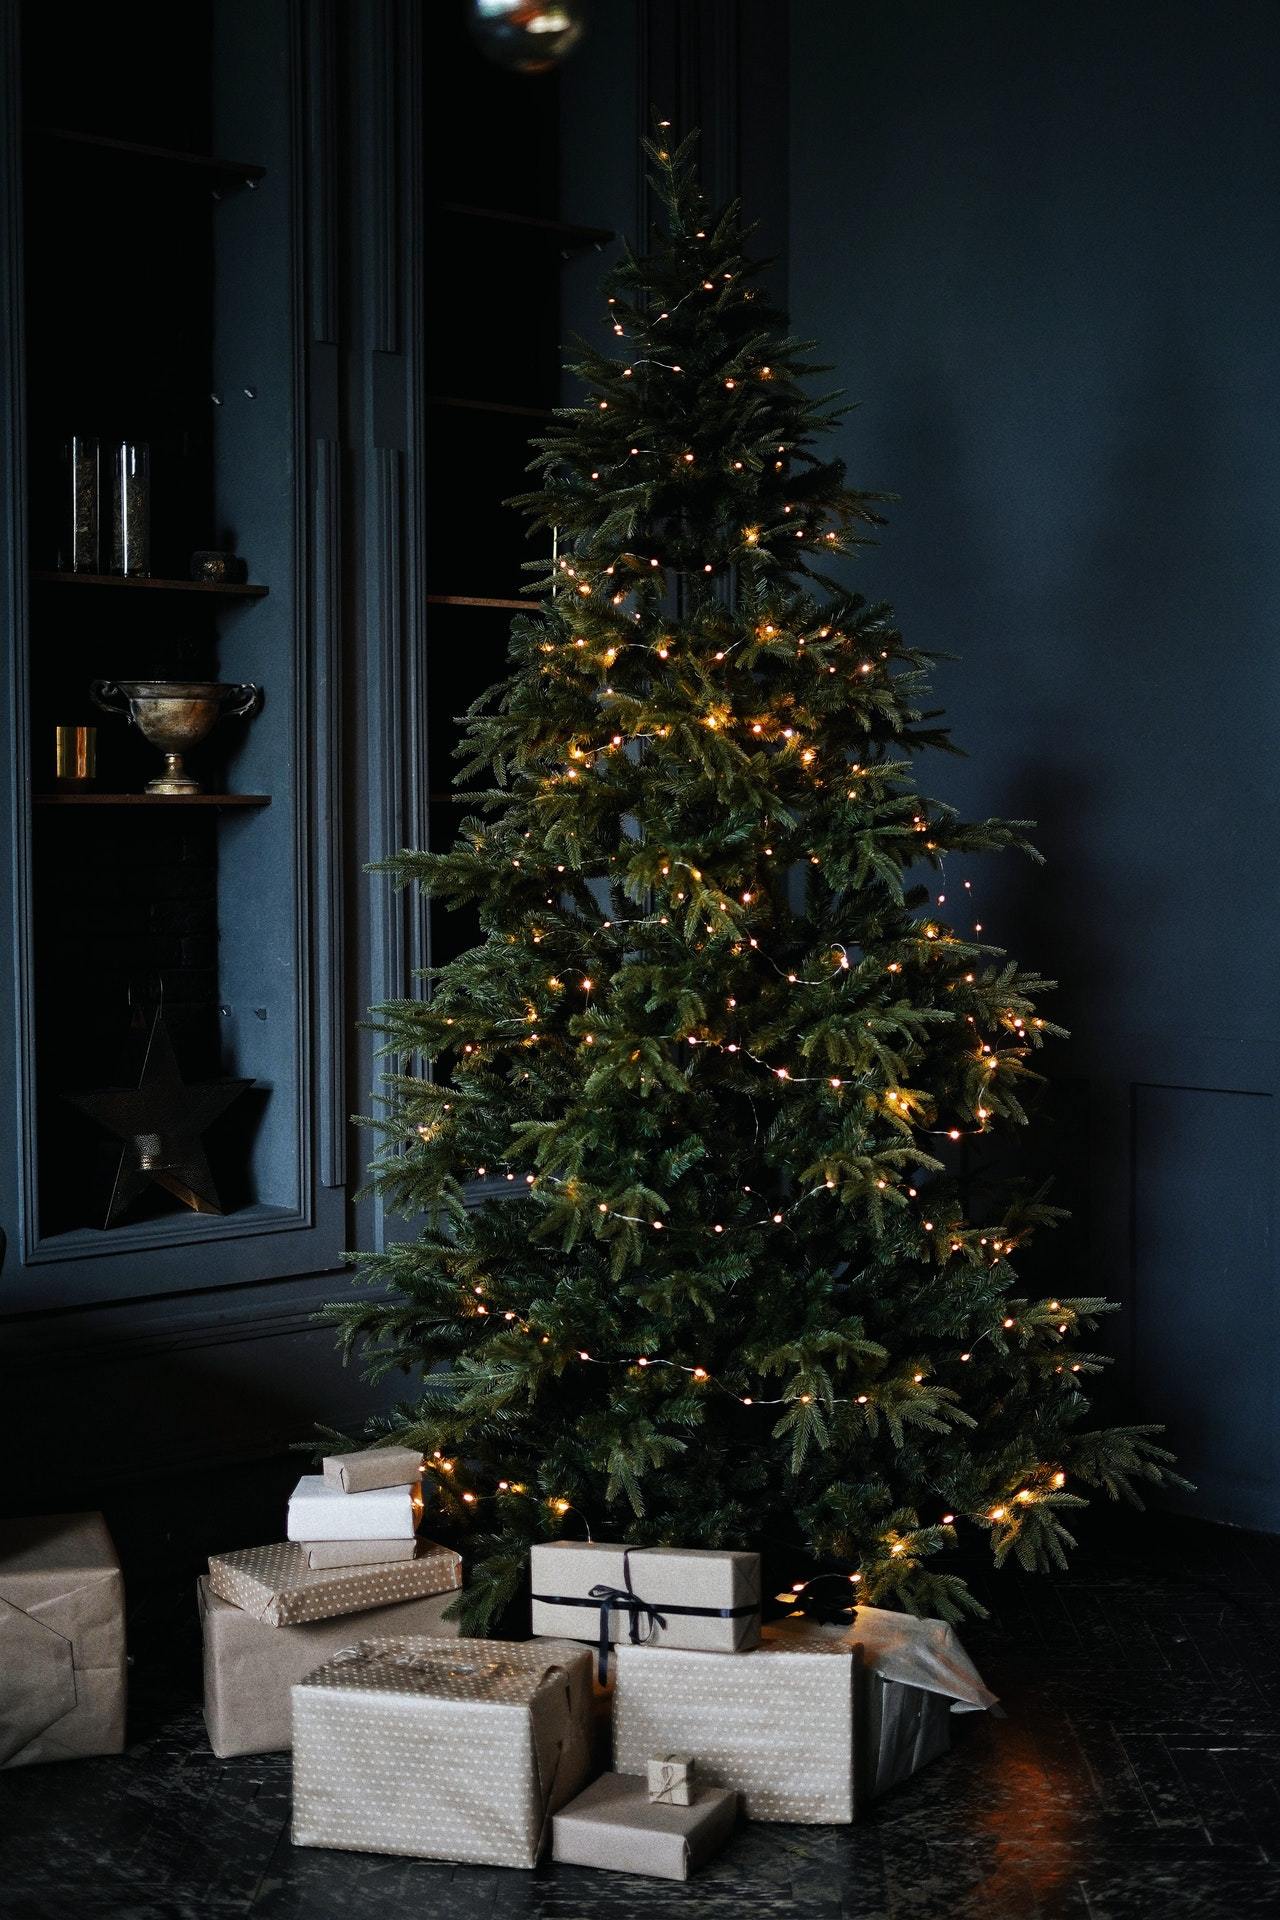 echter Tannenbaum Weihnachtsbaum Christbaum Premium – WOLF Weihnachtsbaum-kaufen Nordmanntanne